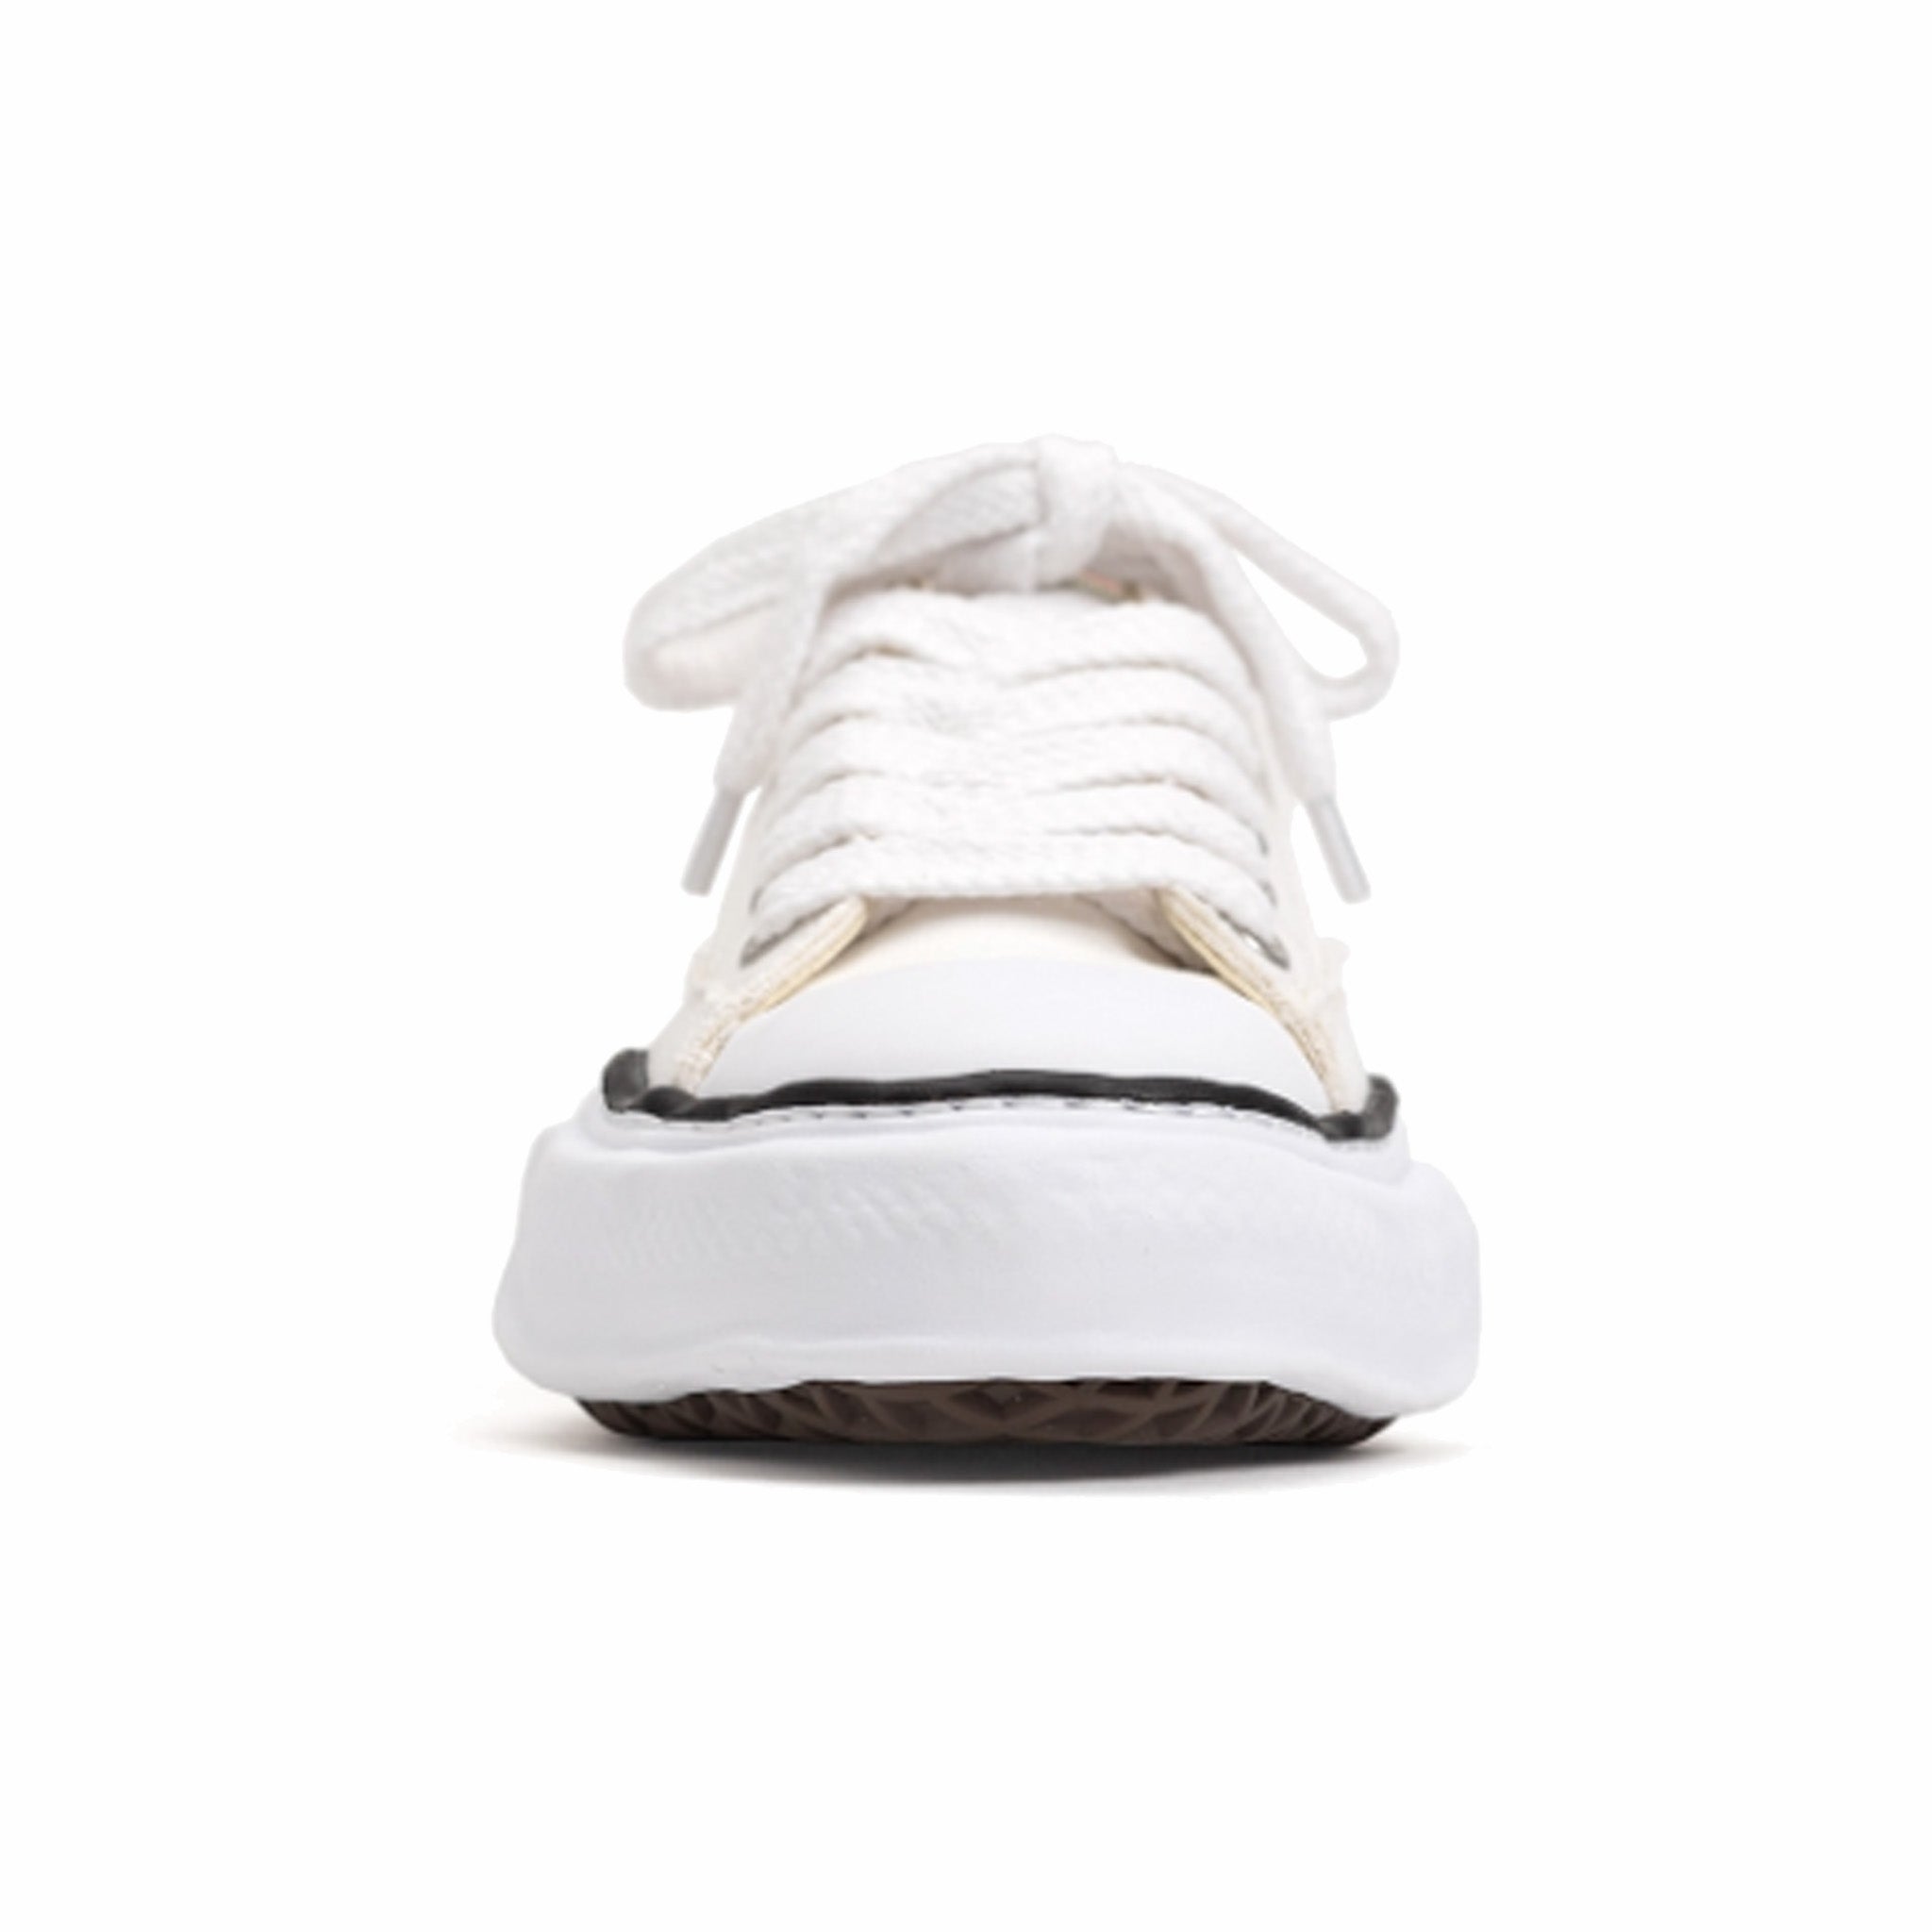 Maison MIHARA YASUHIRO &quot;Peterson&quot; OG Sole Canvas Low-Top Sneaker (White) - August Shop